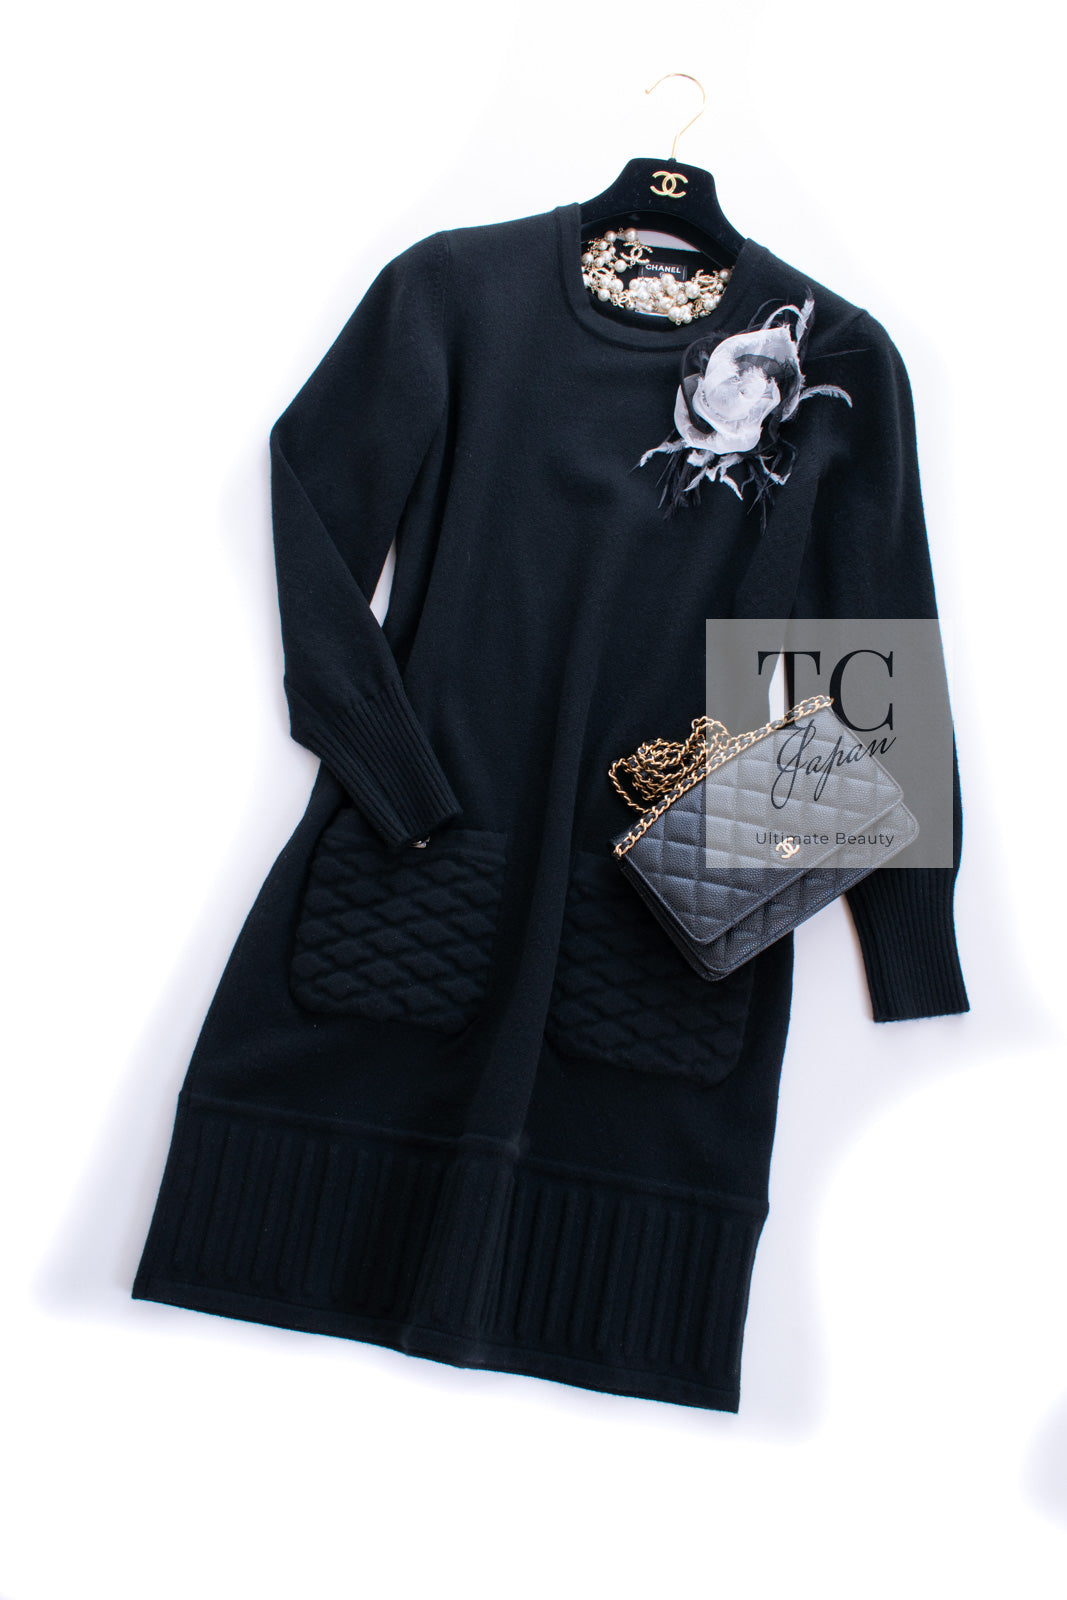 シャネル ワンピース CHANEL Dress【正規品・専門店】シャネル 洋服の専門店 Specialized in CHANEL Clot – TC  JAPAN